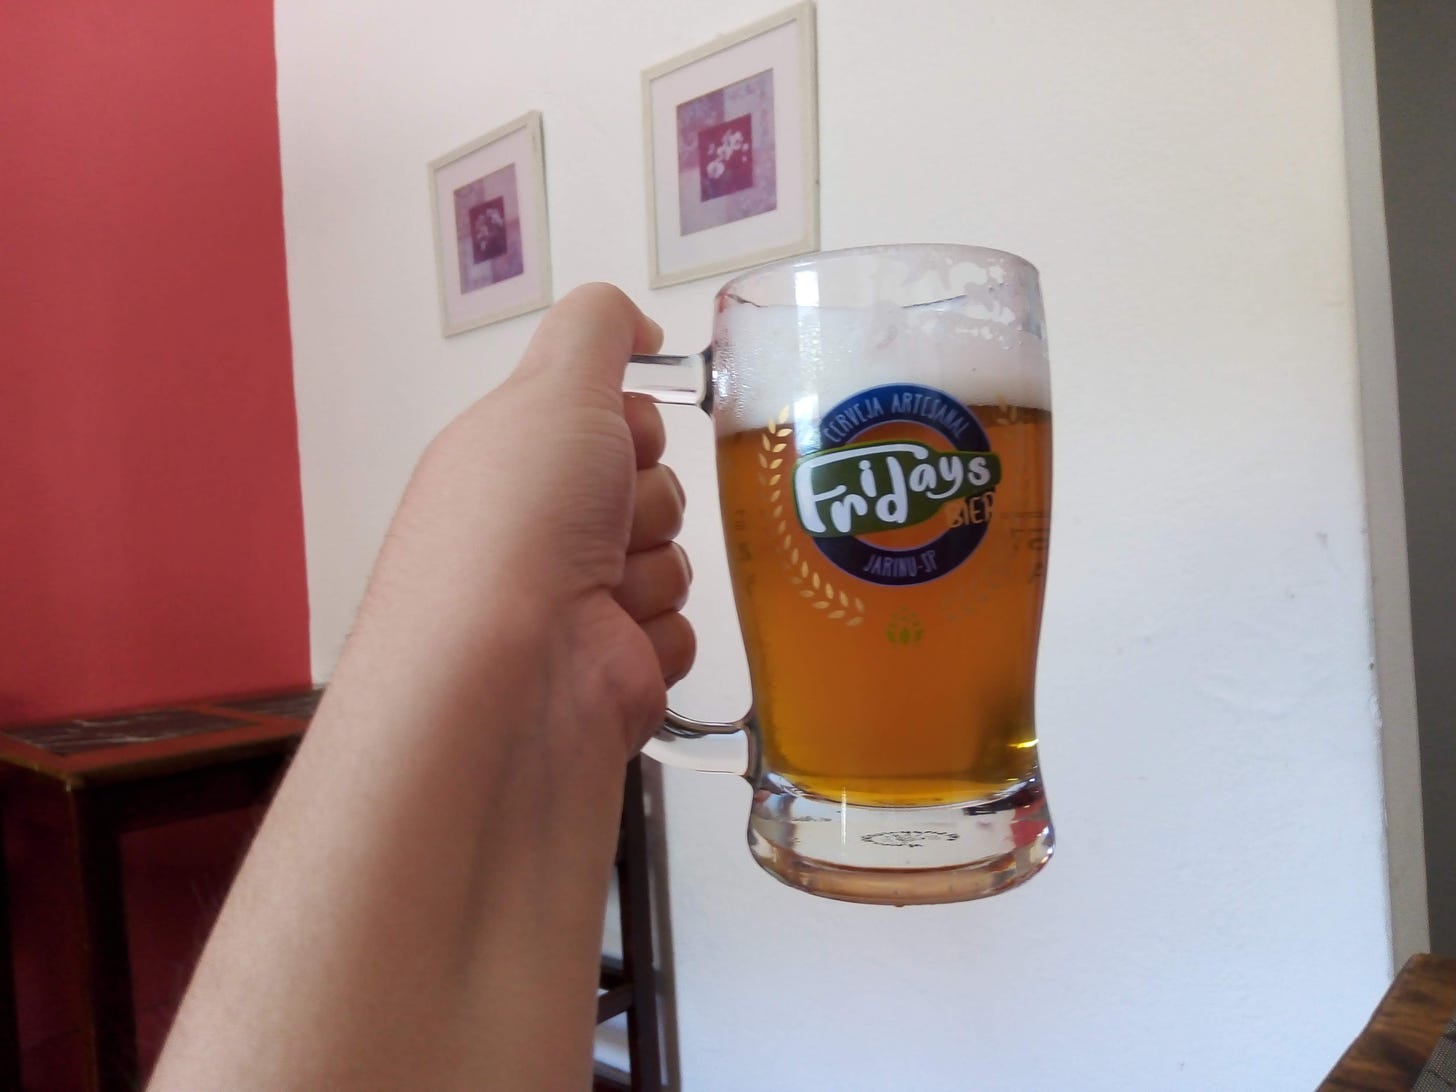 Copo de cerveja com o logotipo da Fridays Bier